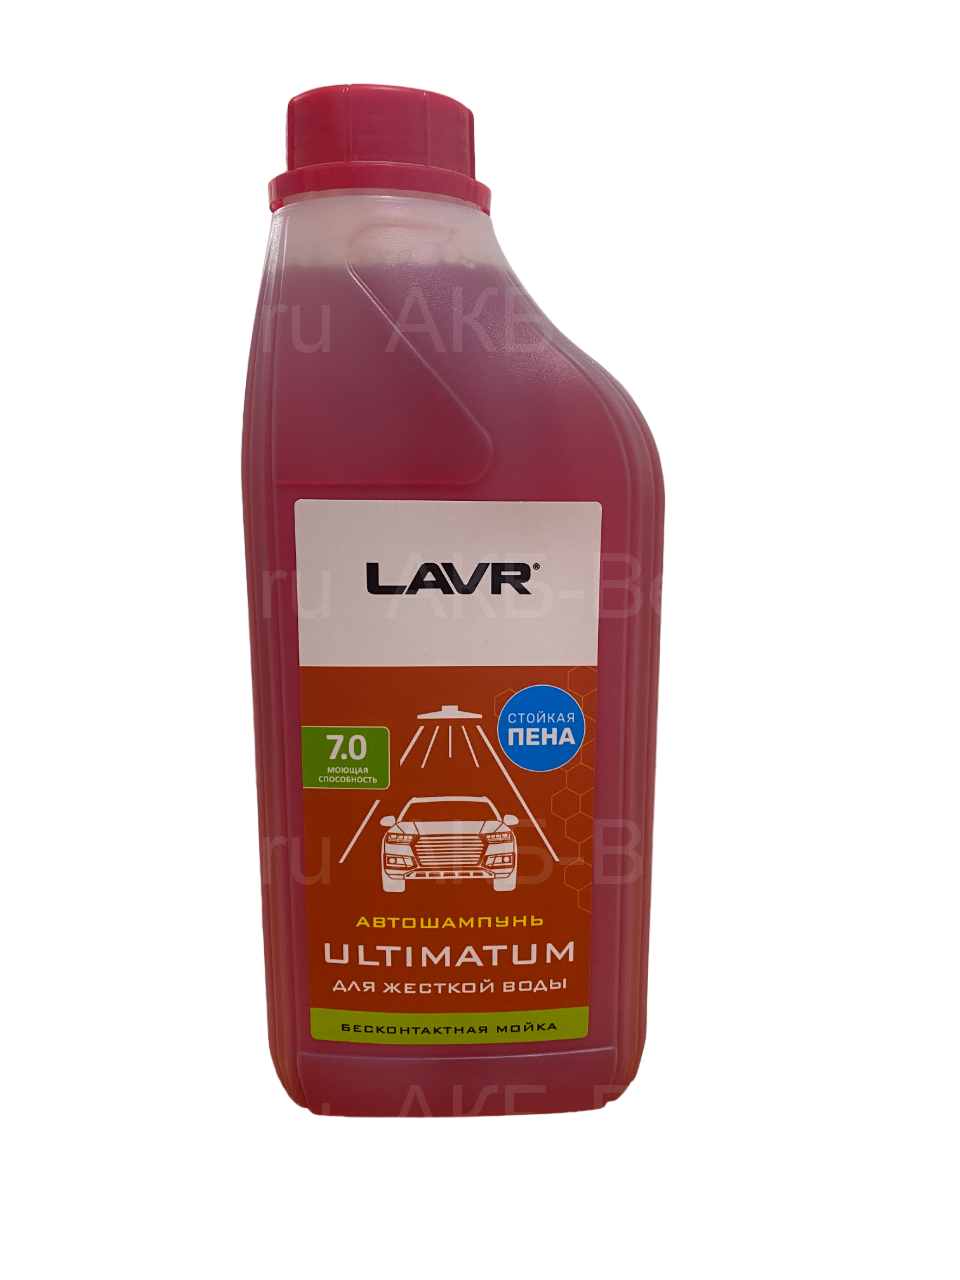 LN2326 Lavr Автошампунь для бесконтактной мойки ULTIMATUM (для жесткой воды) 7.0 1л.